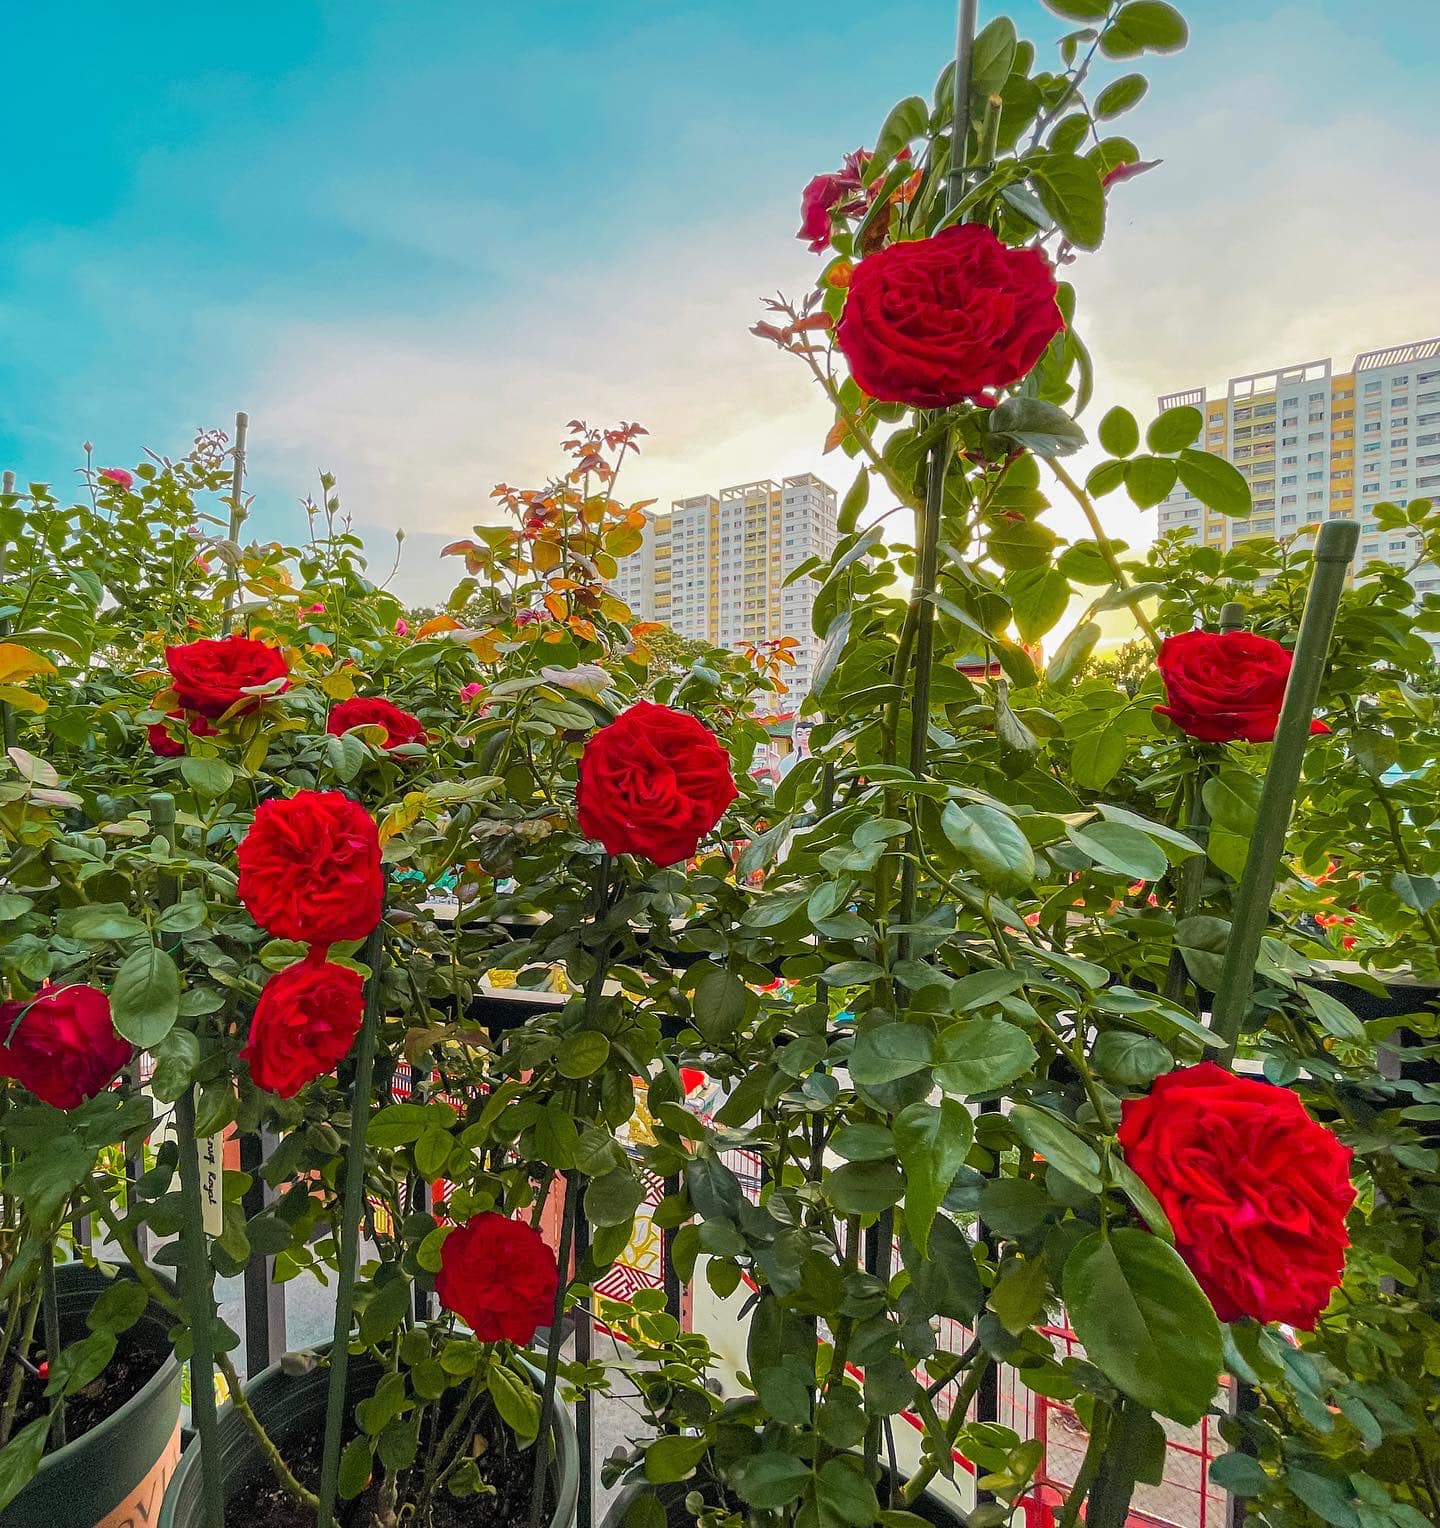 Khu vườn hoa hồng đẹp ngây ngất trên sân thượng ở TP HCM